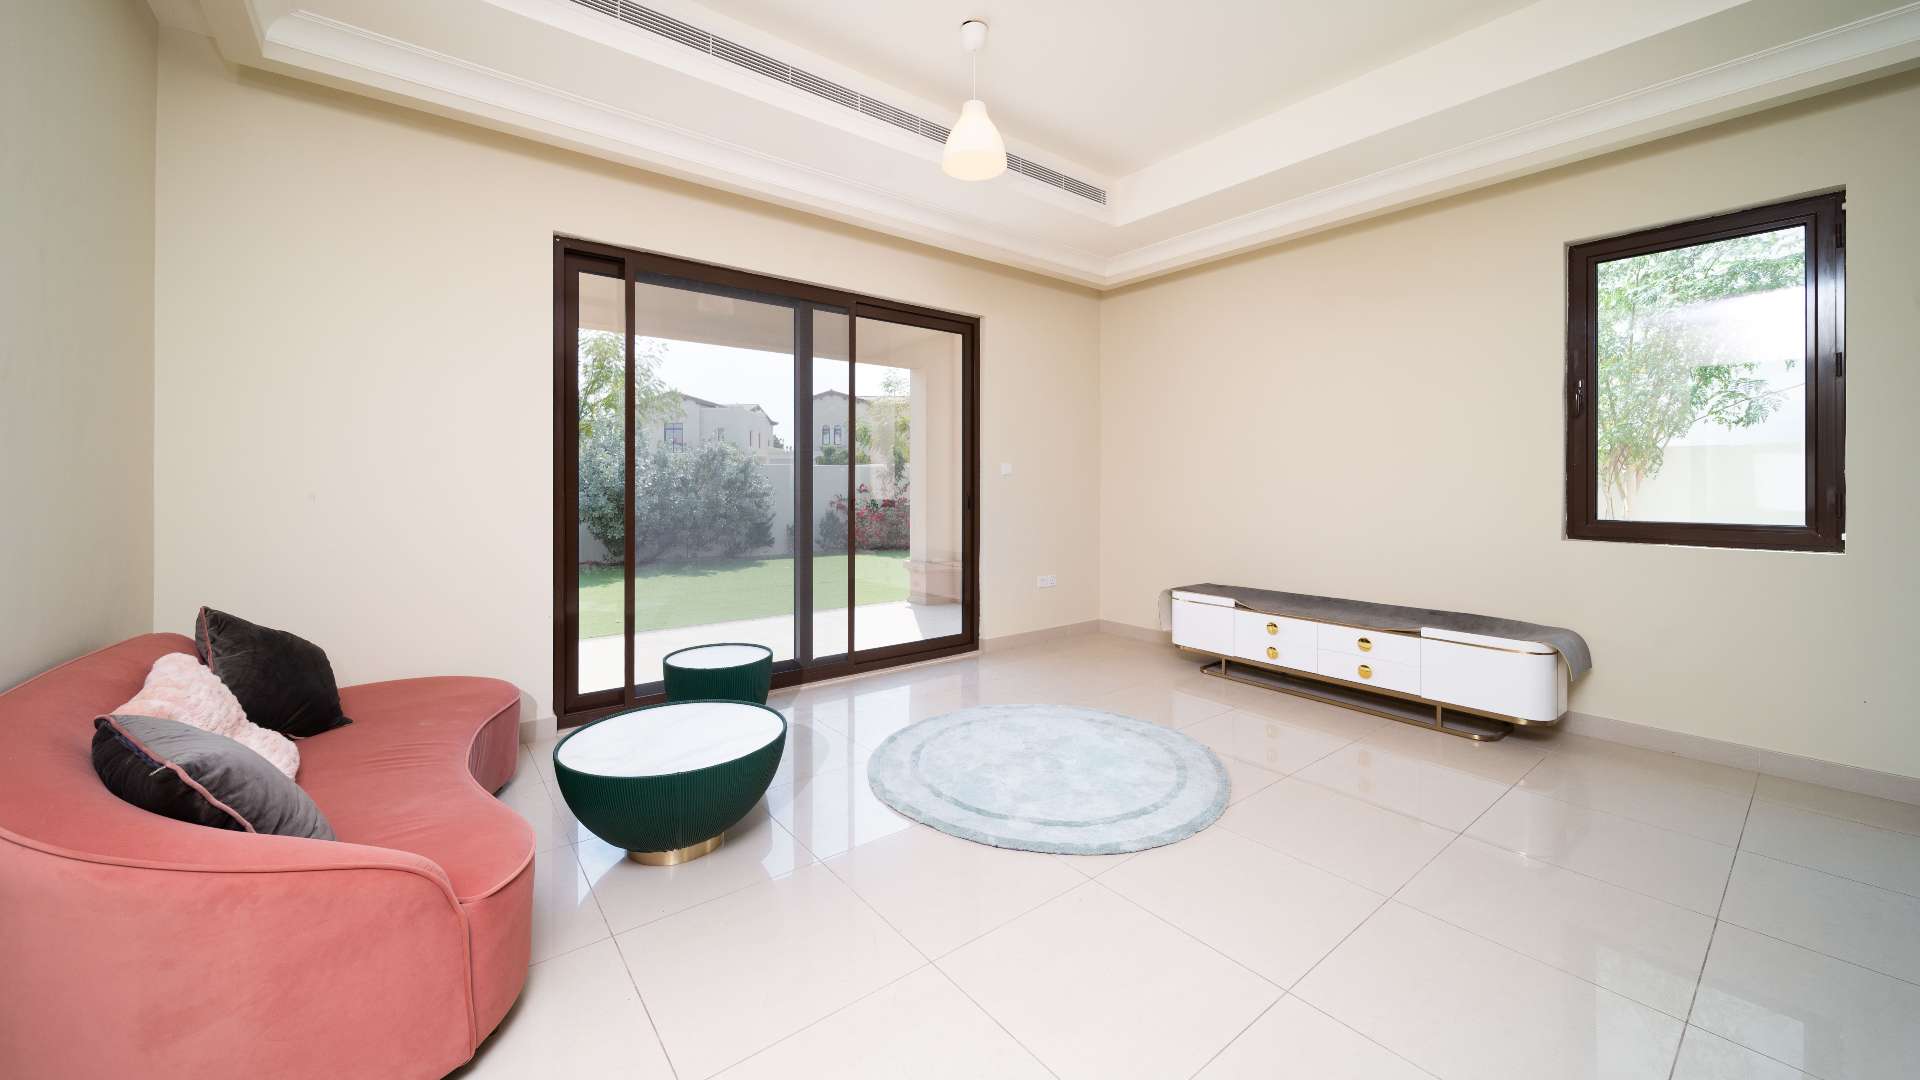 4 Bedroom Villa For Rent Rasha Lp10804 293a0363f2001e00.jpg